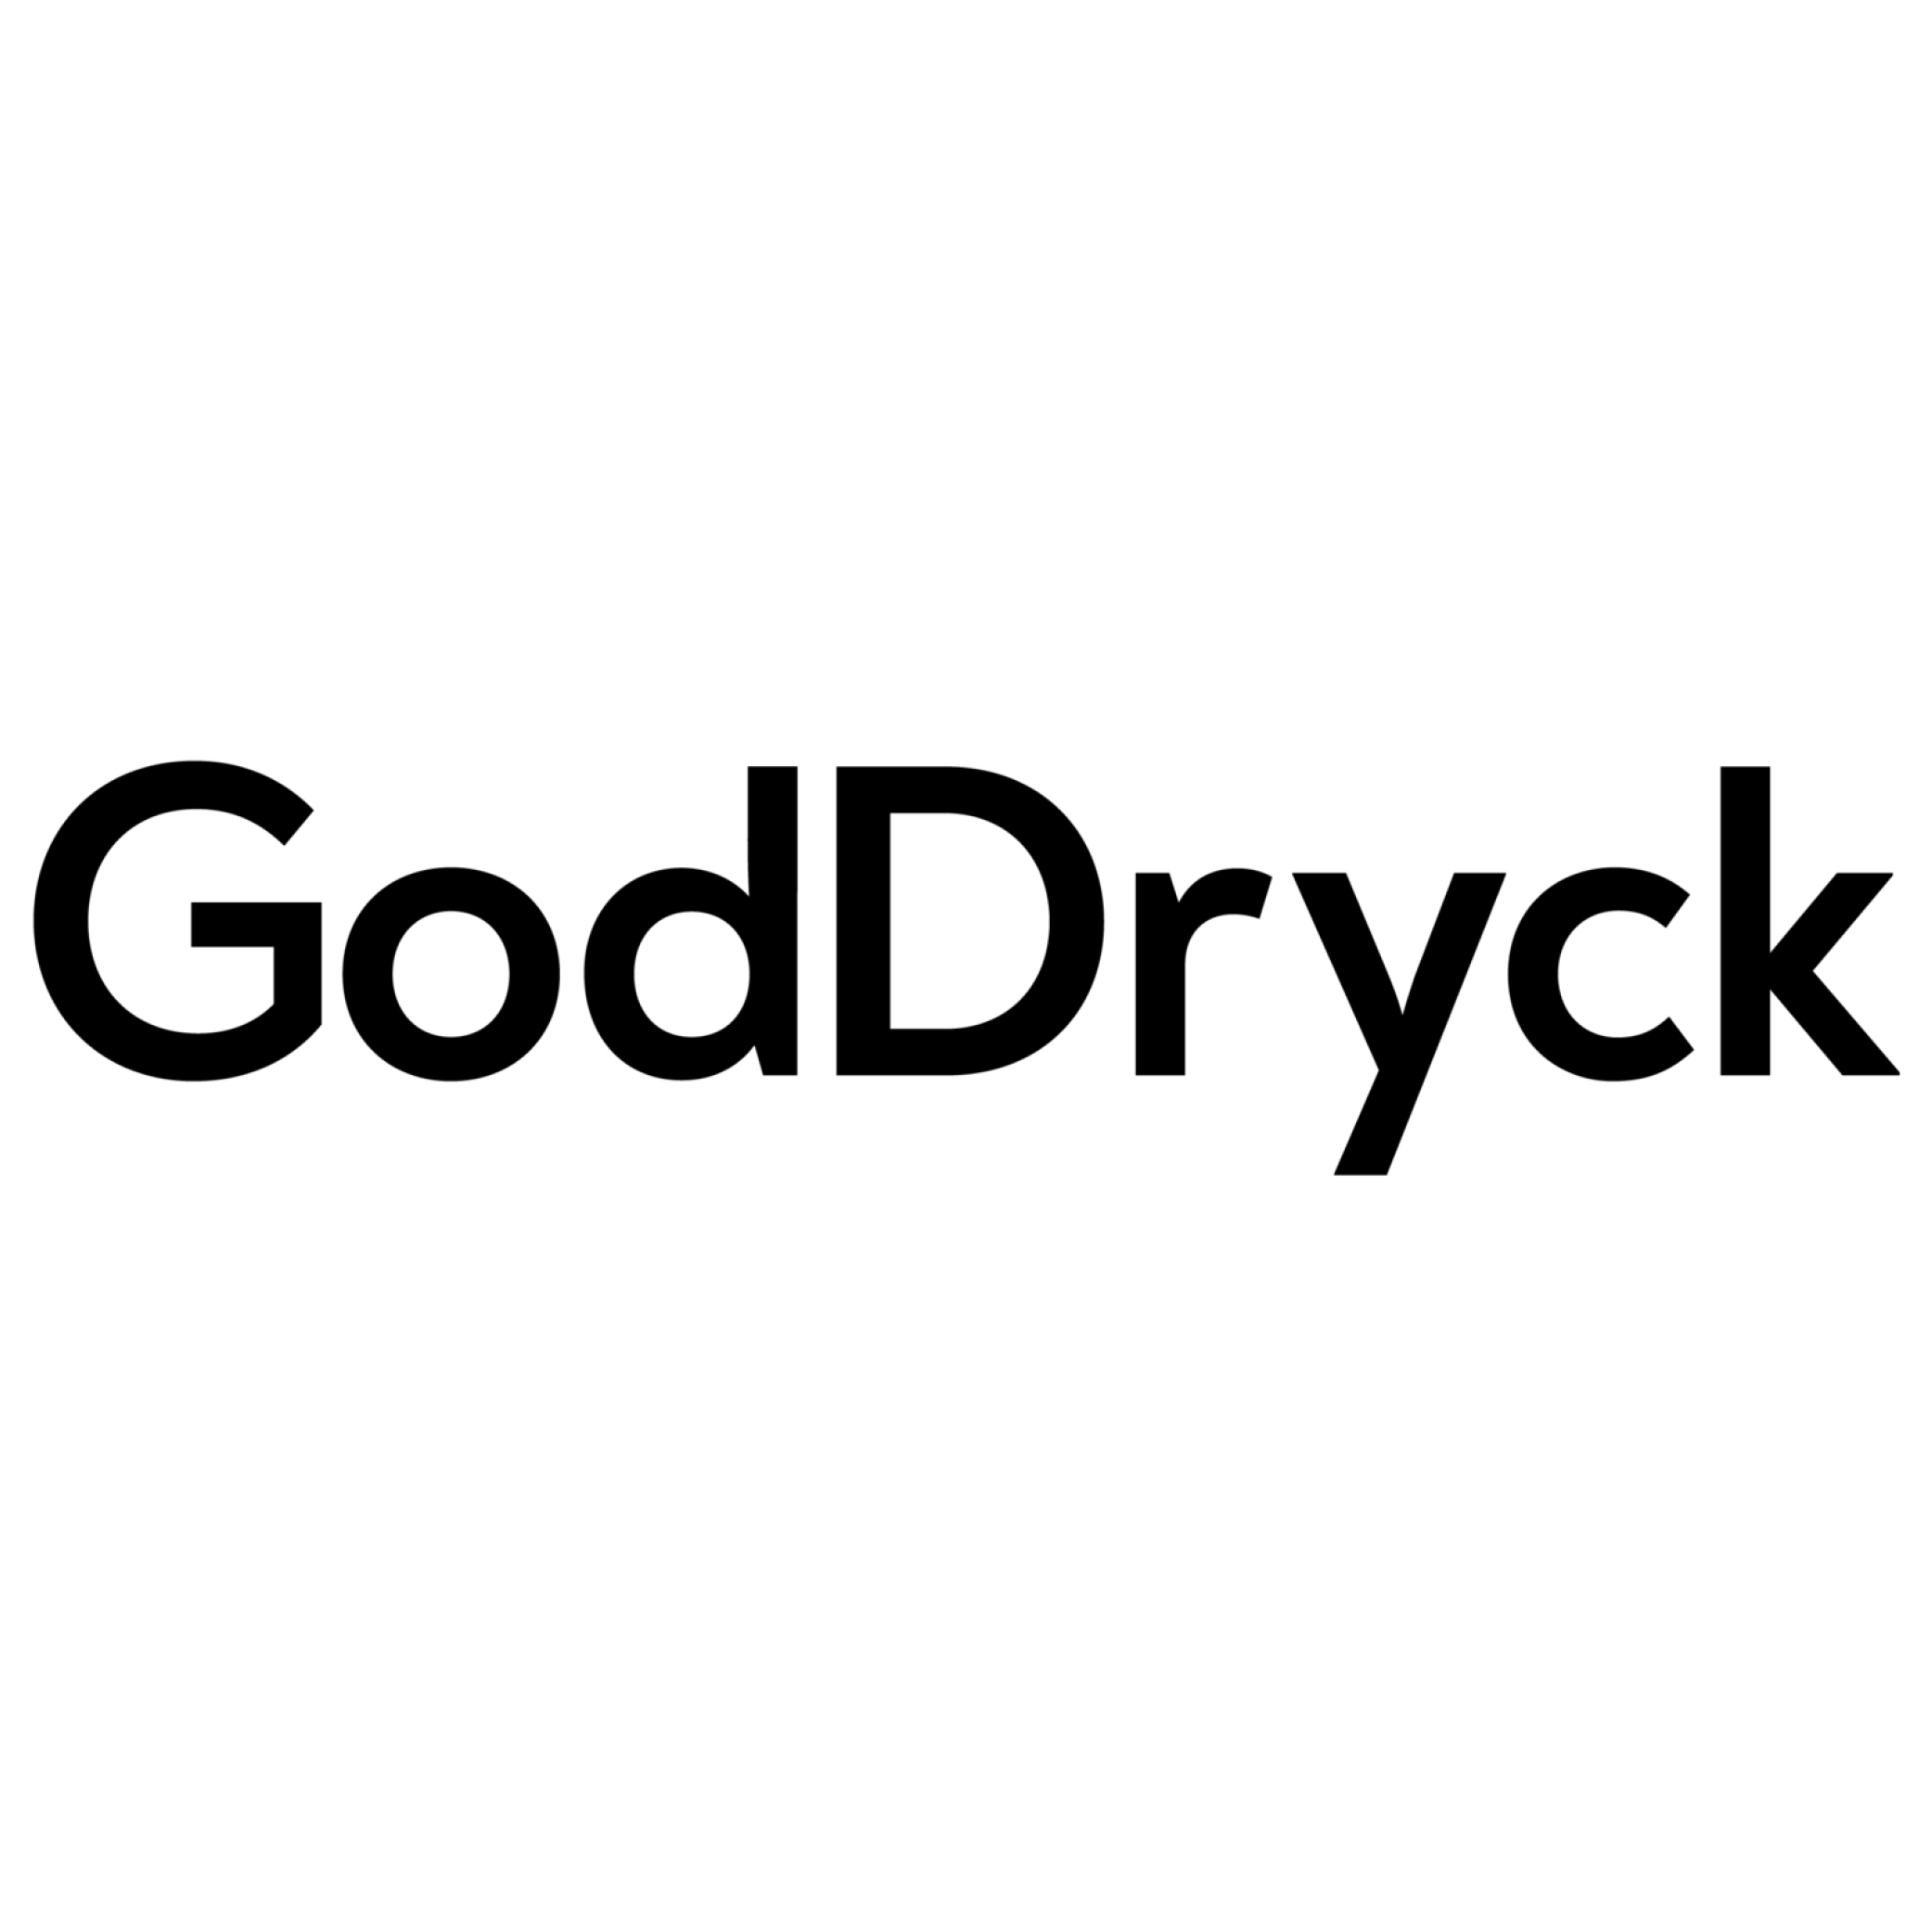 GodDryck - Referenser